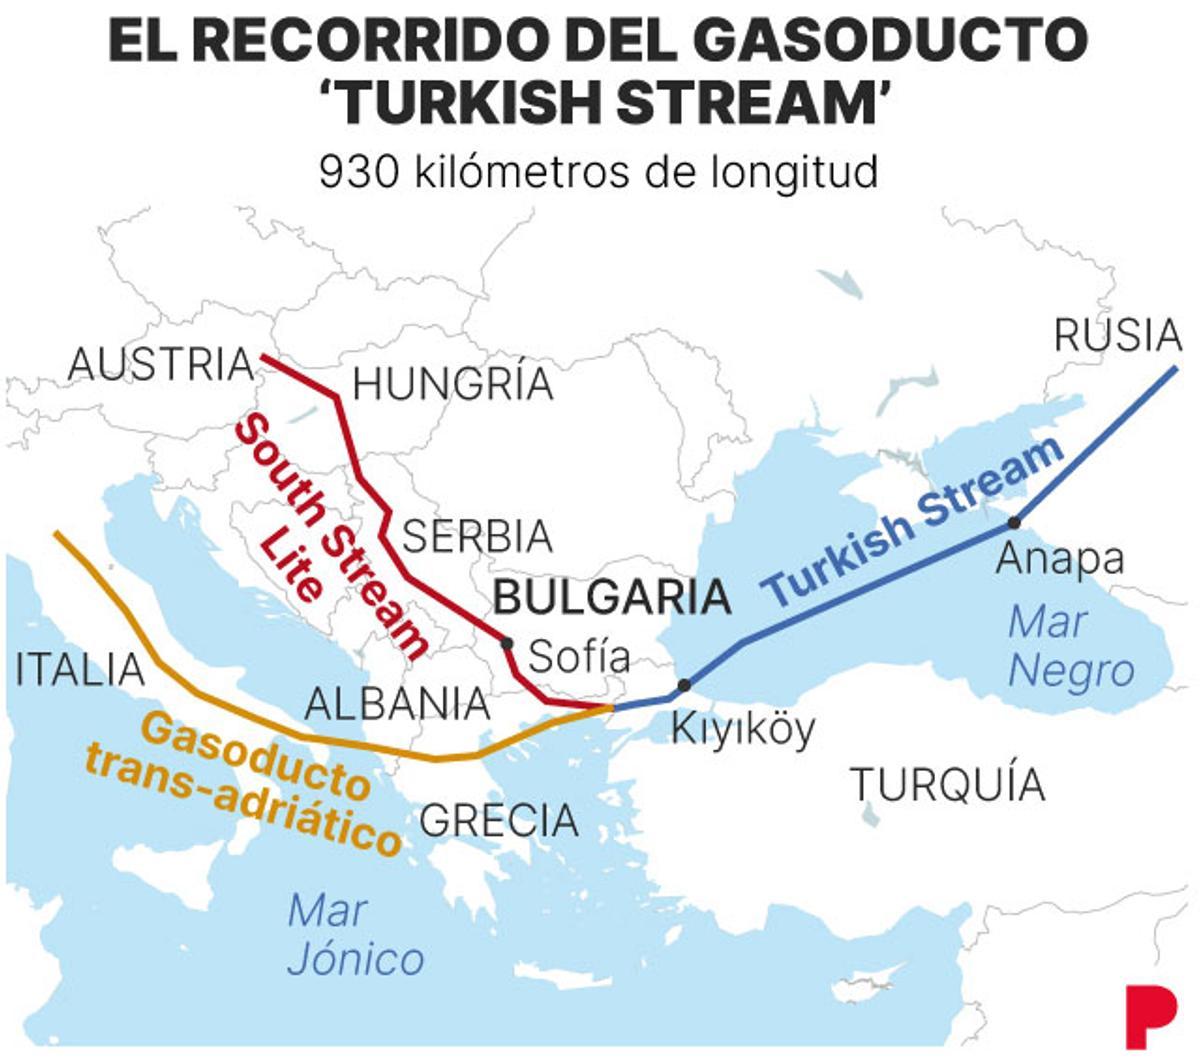 El recorrido del gasoducto.